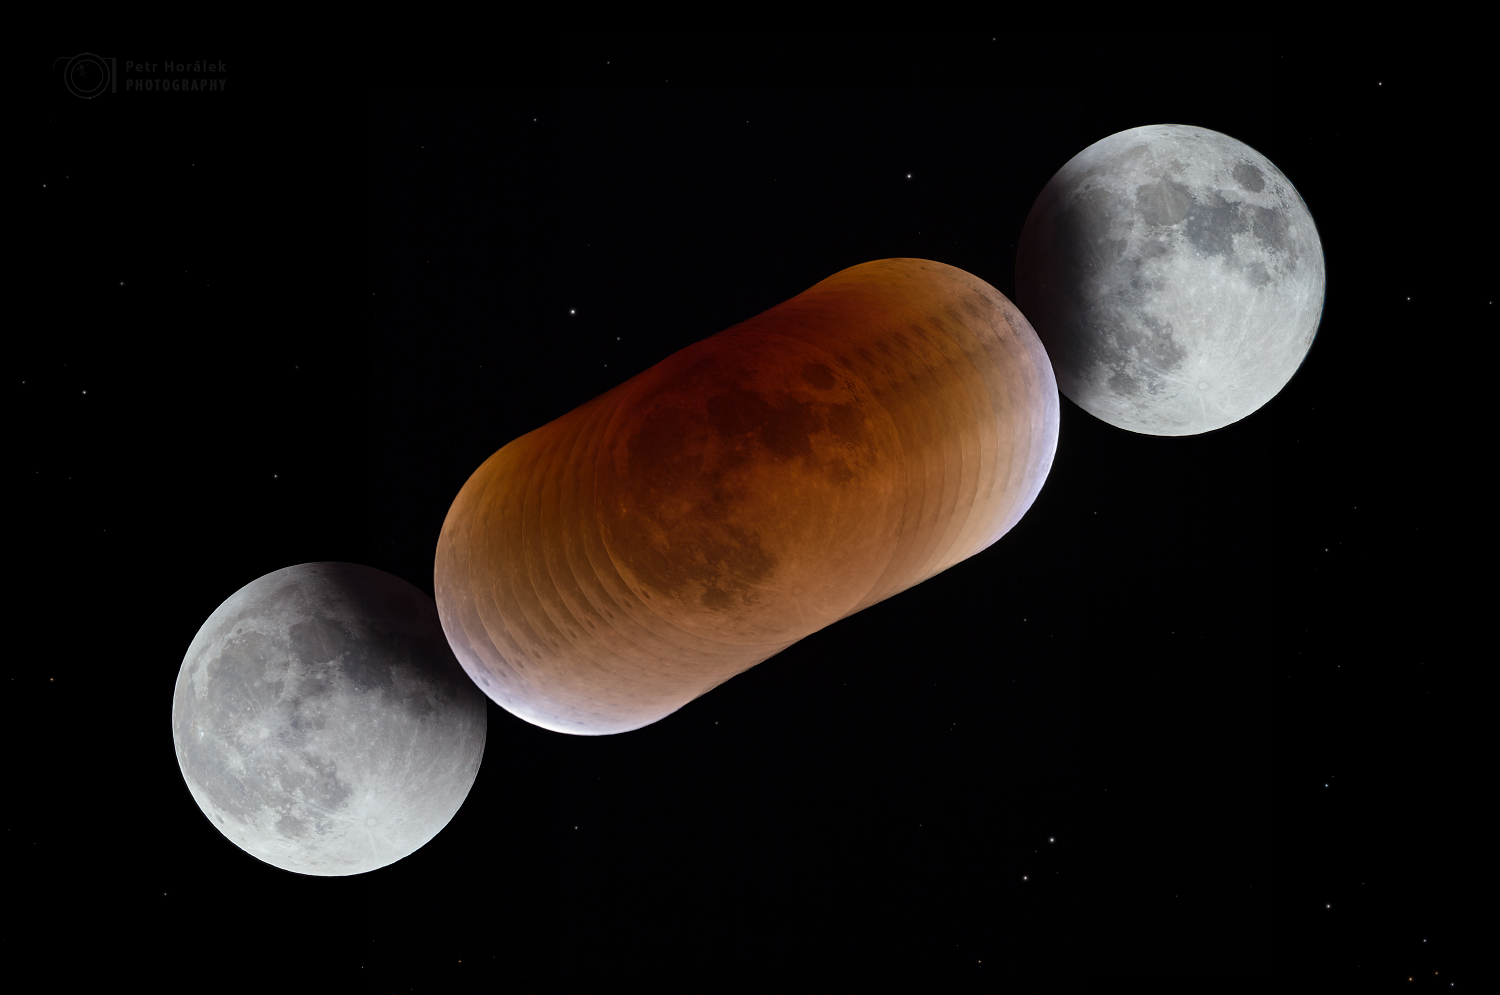 Průběh zatmění Měsíce a barvy v zemském stínu během úkazu 31. ledna 2018.Autor: Petr Horálek.